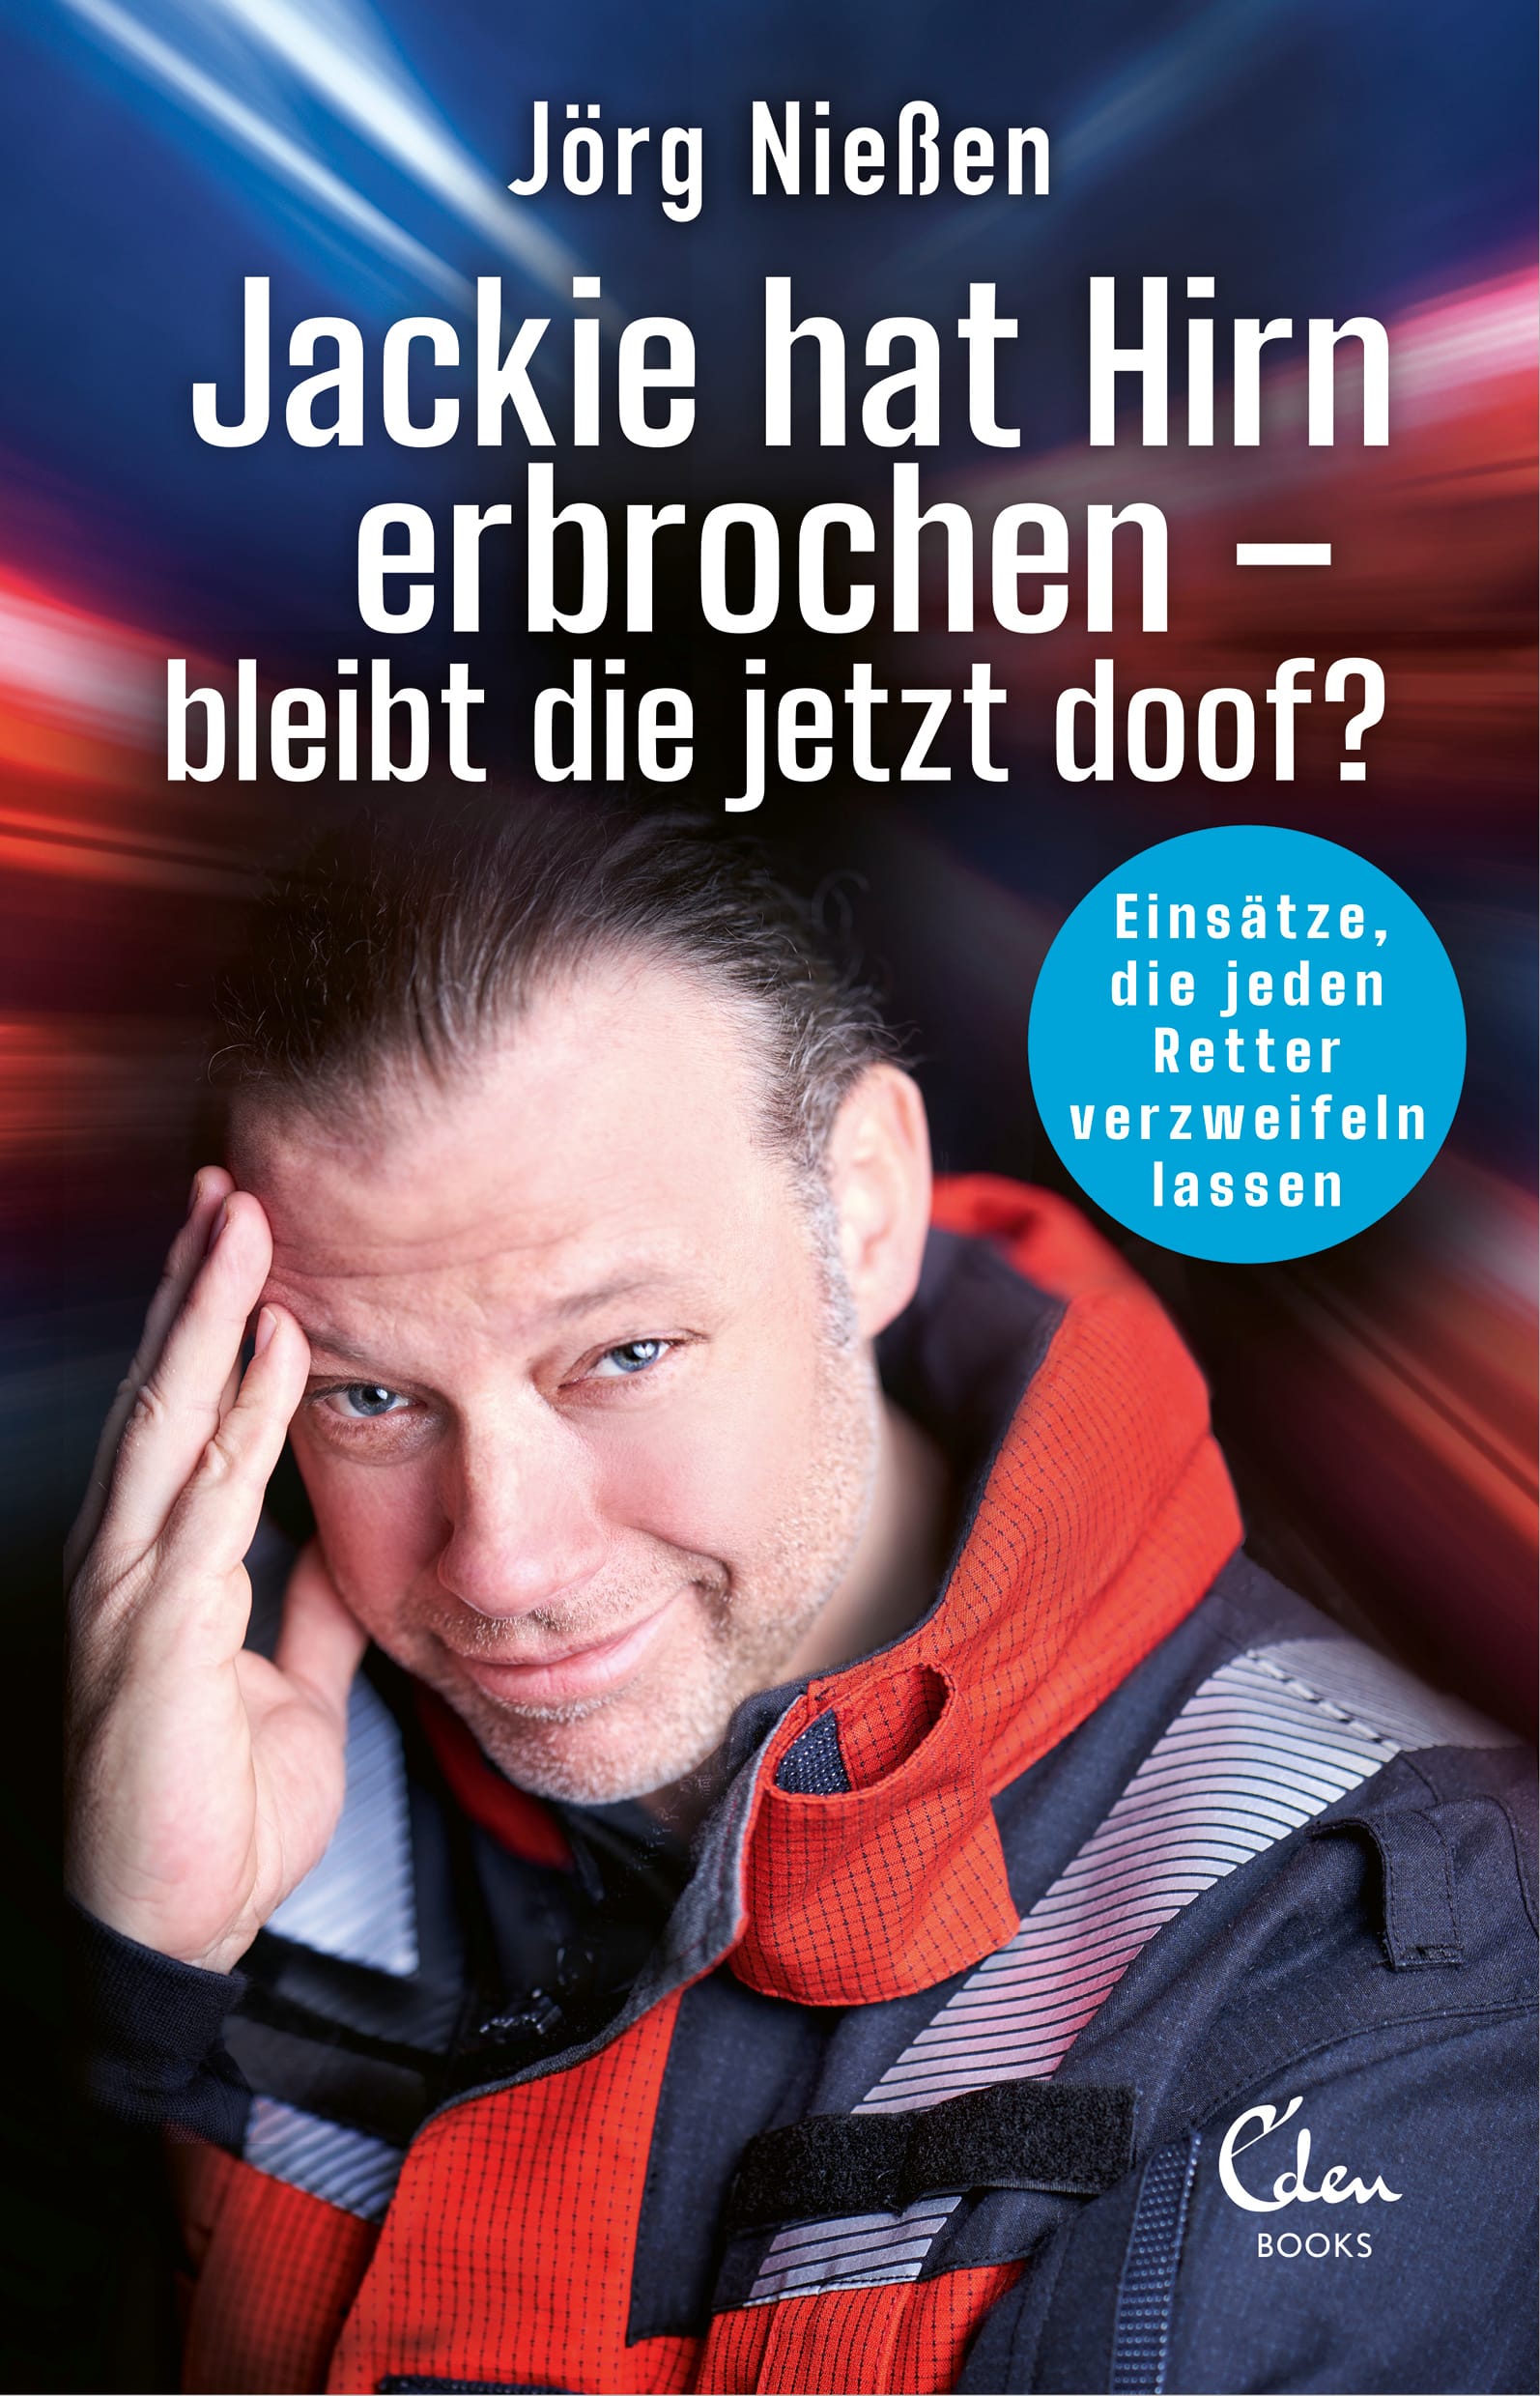 Buchcover von "Jackie hat Gehirn erbrochen – bleibt sie jetzt doof?": Erschienen im Eden-Verlag.